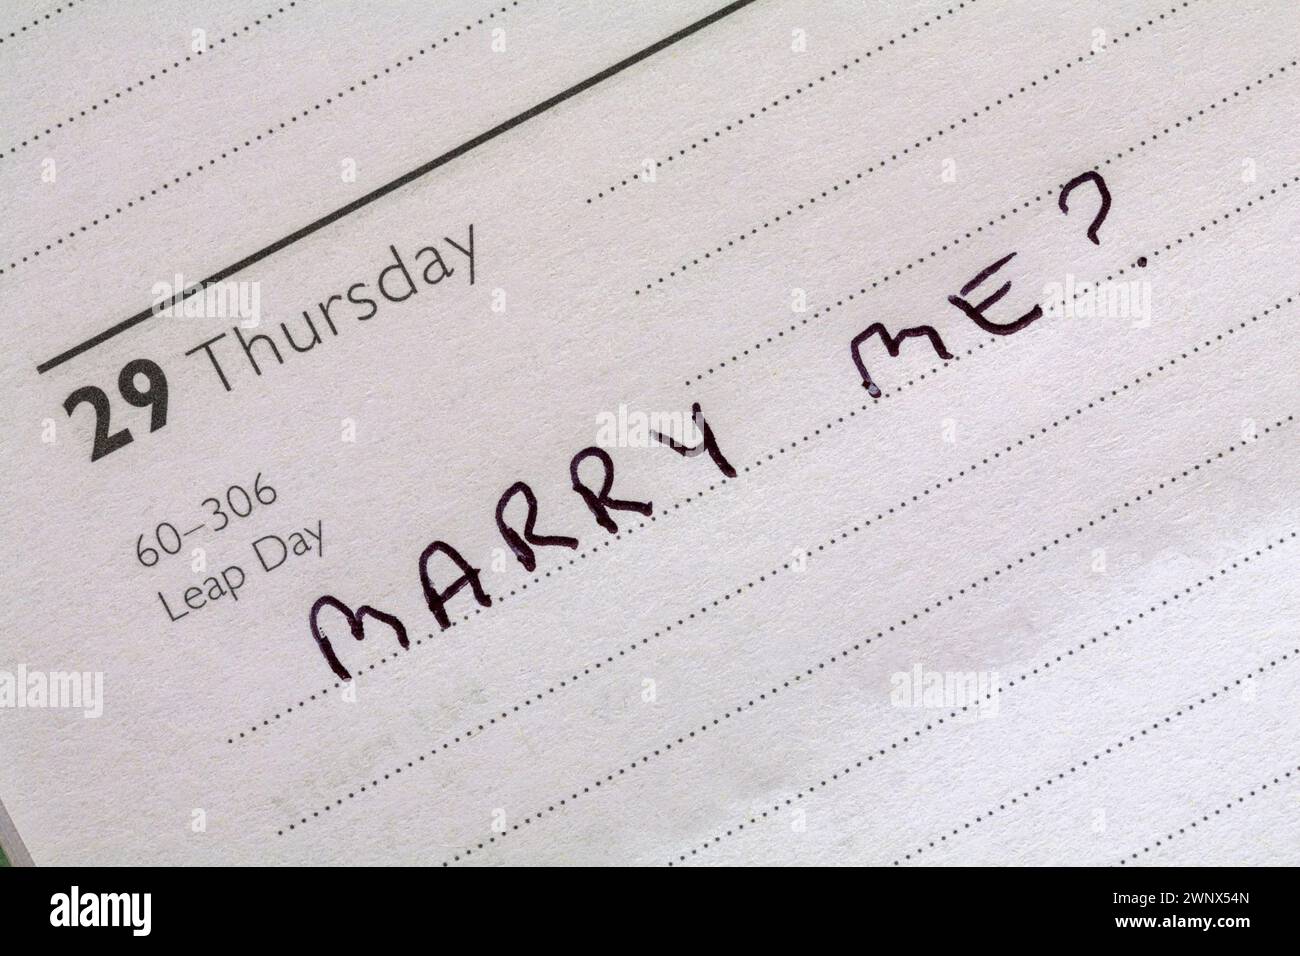 29 febbraio anno bisestile con messaggio Marry me? scritto in diario - proposta per l'anno bisestile Foto Stock